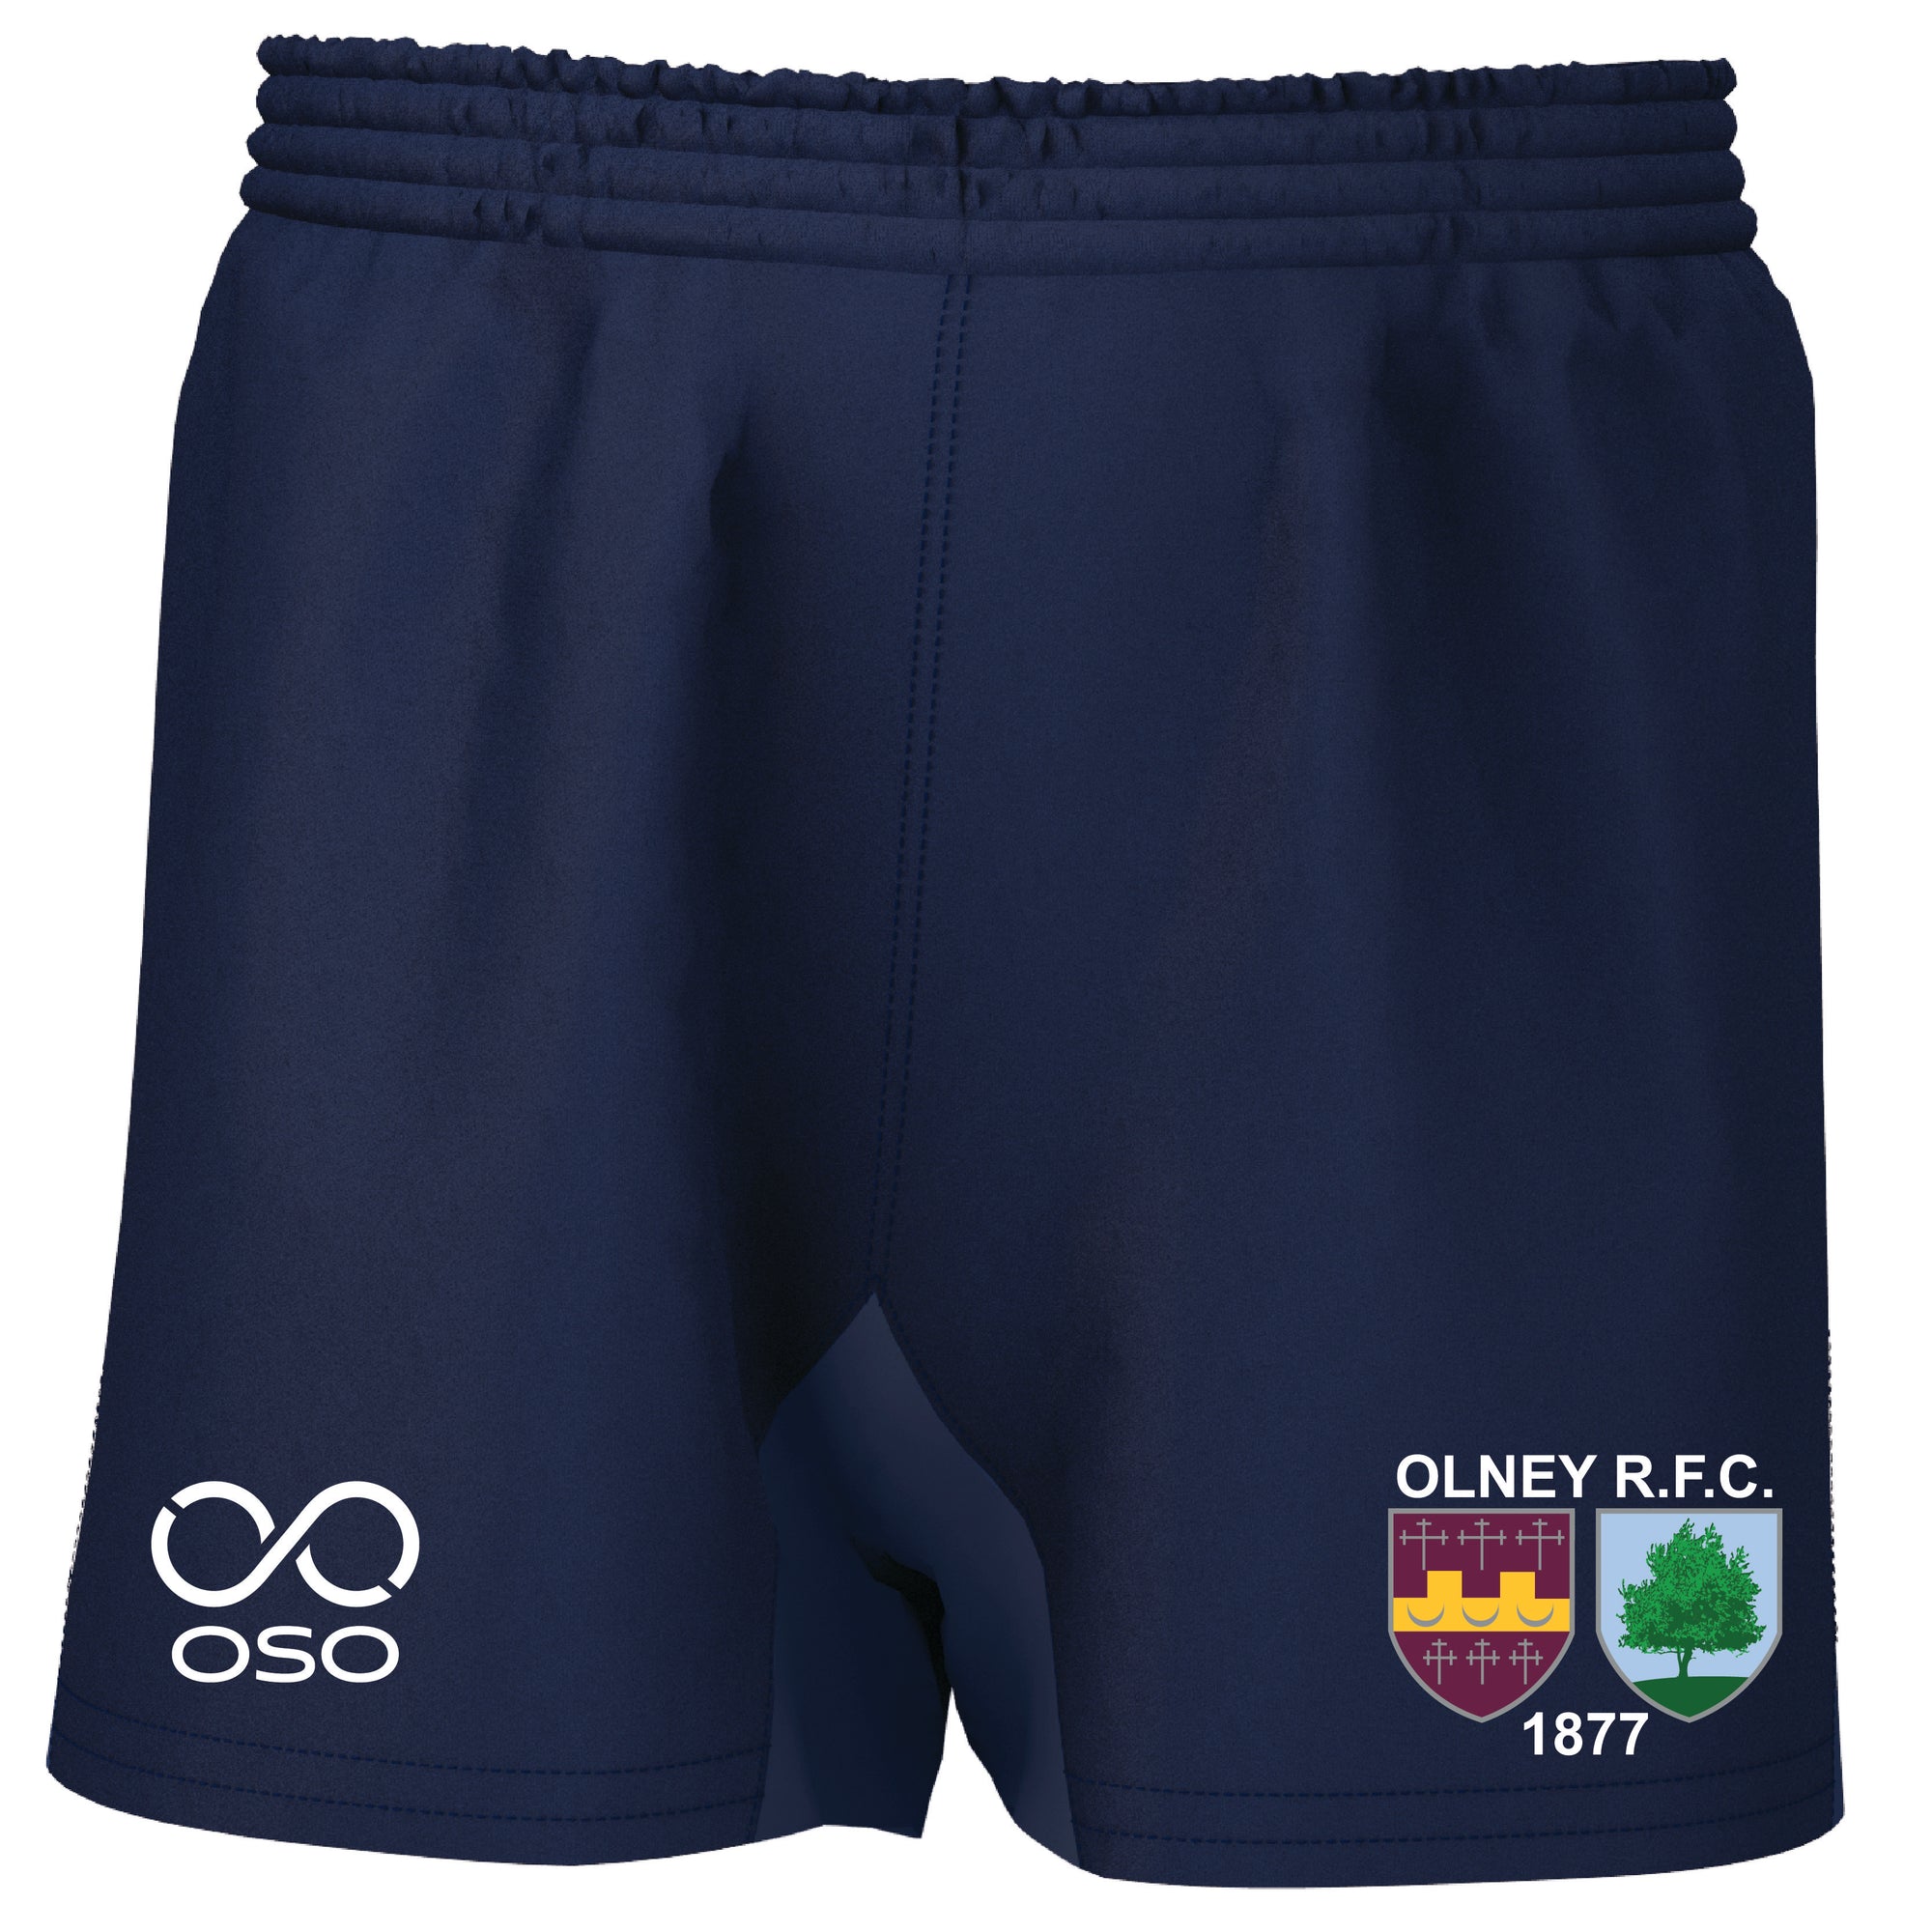 Olney RFC Pro Rugby Shorts - Navy